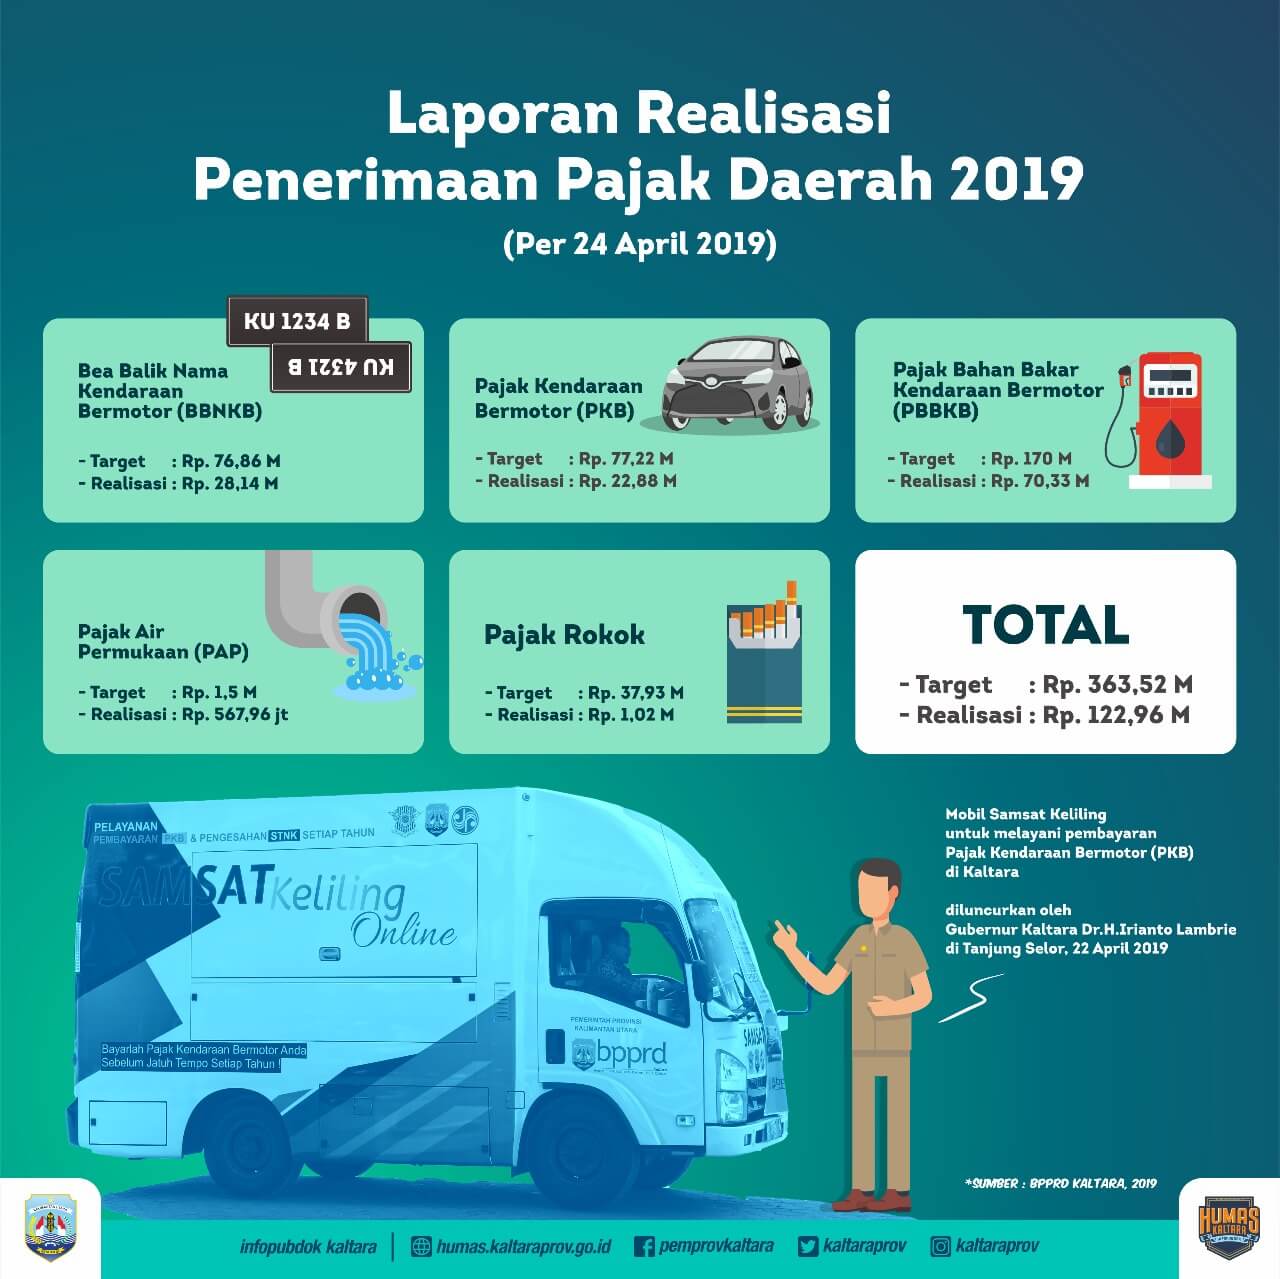 Realisasi Pajak Daerah Kaltara Hingga April 2019 Tembus Rp122 miliar